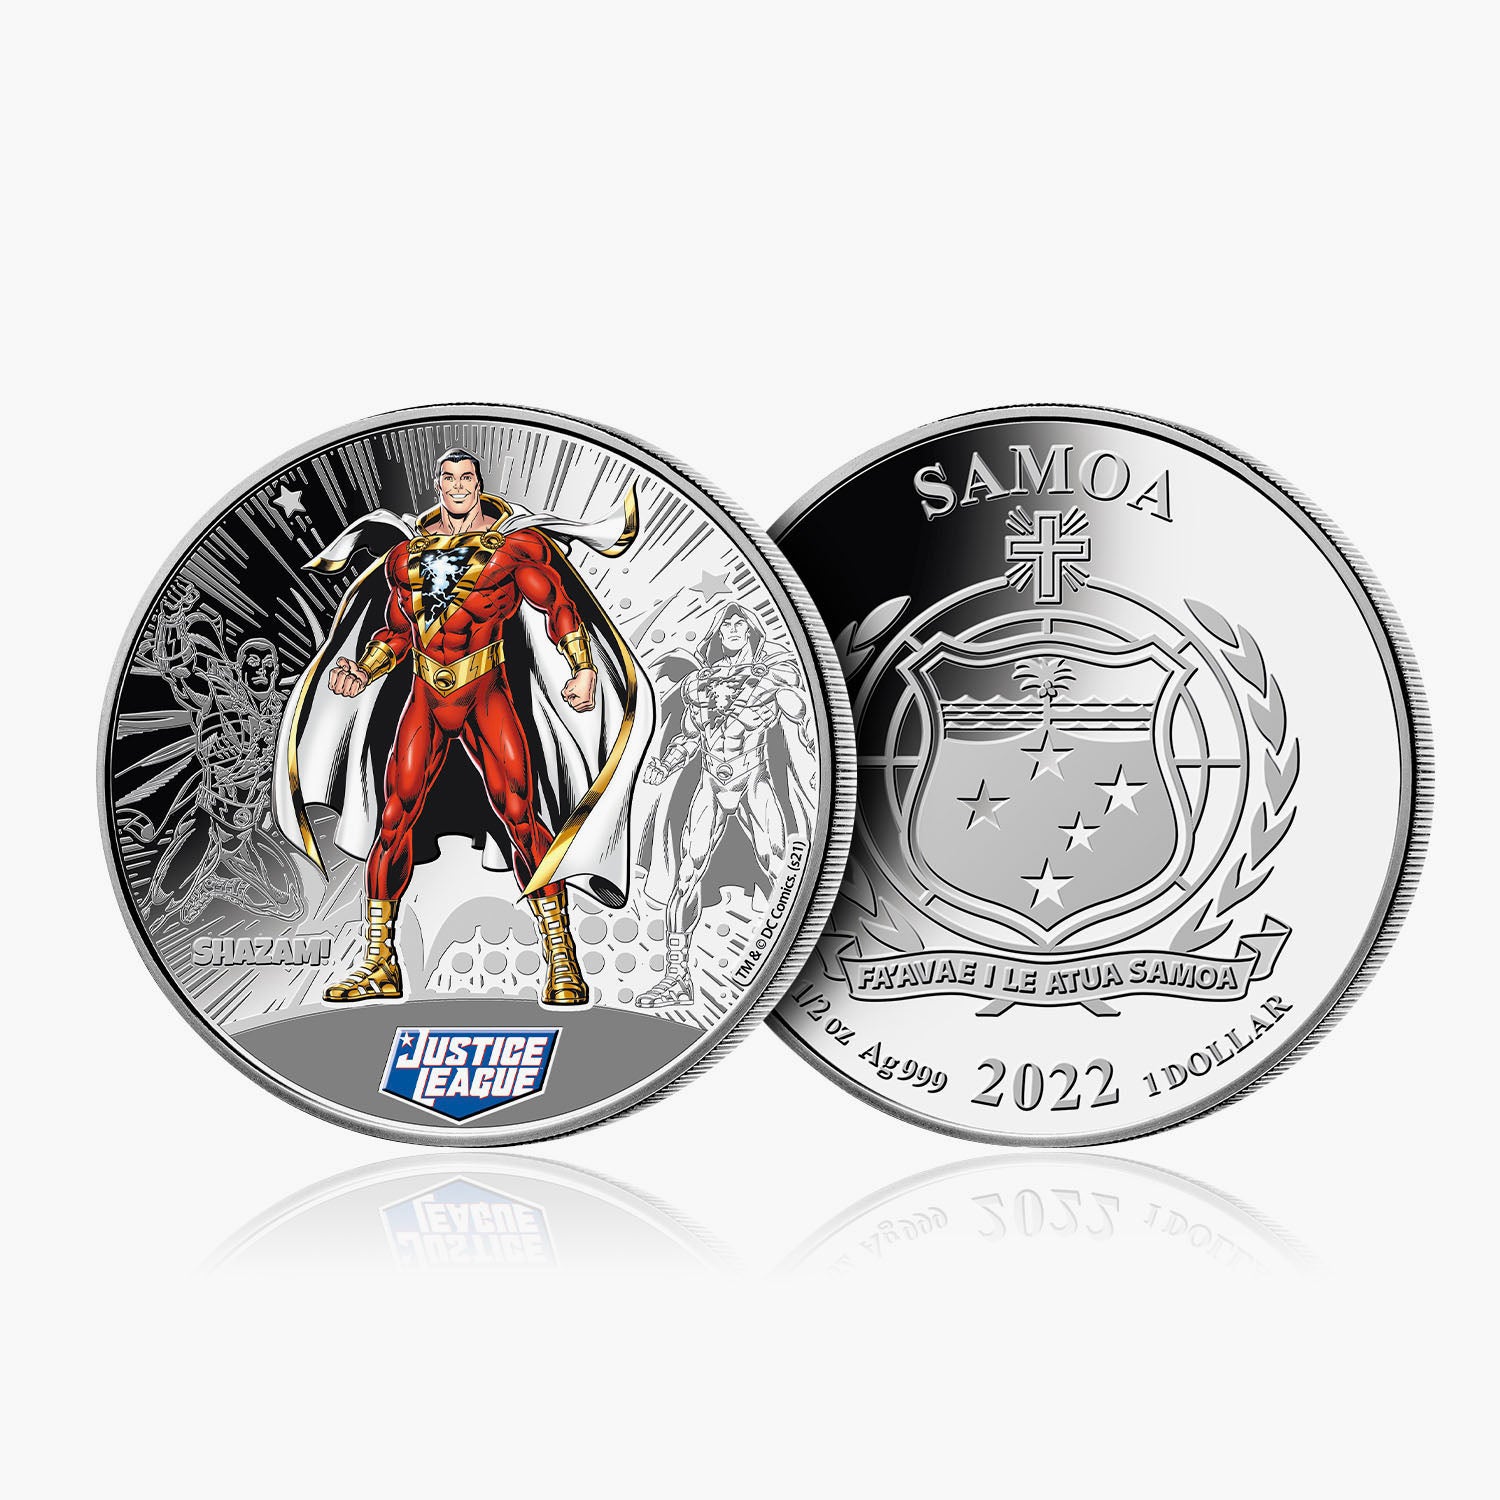 Justice League - Shazam 1/2oz Silver Coin